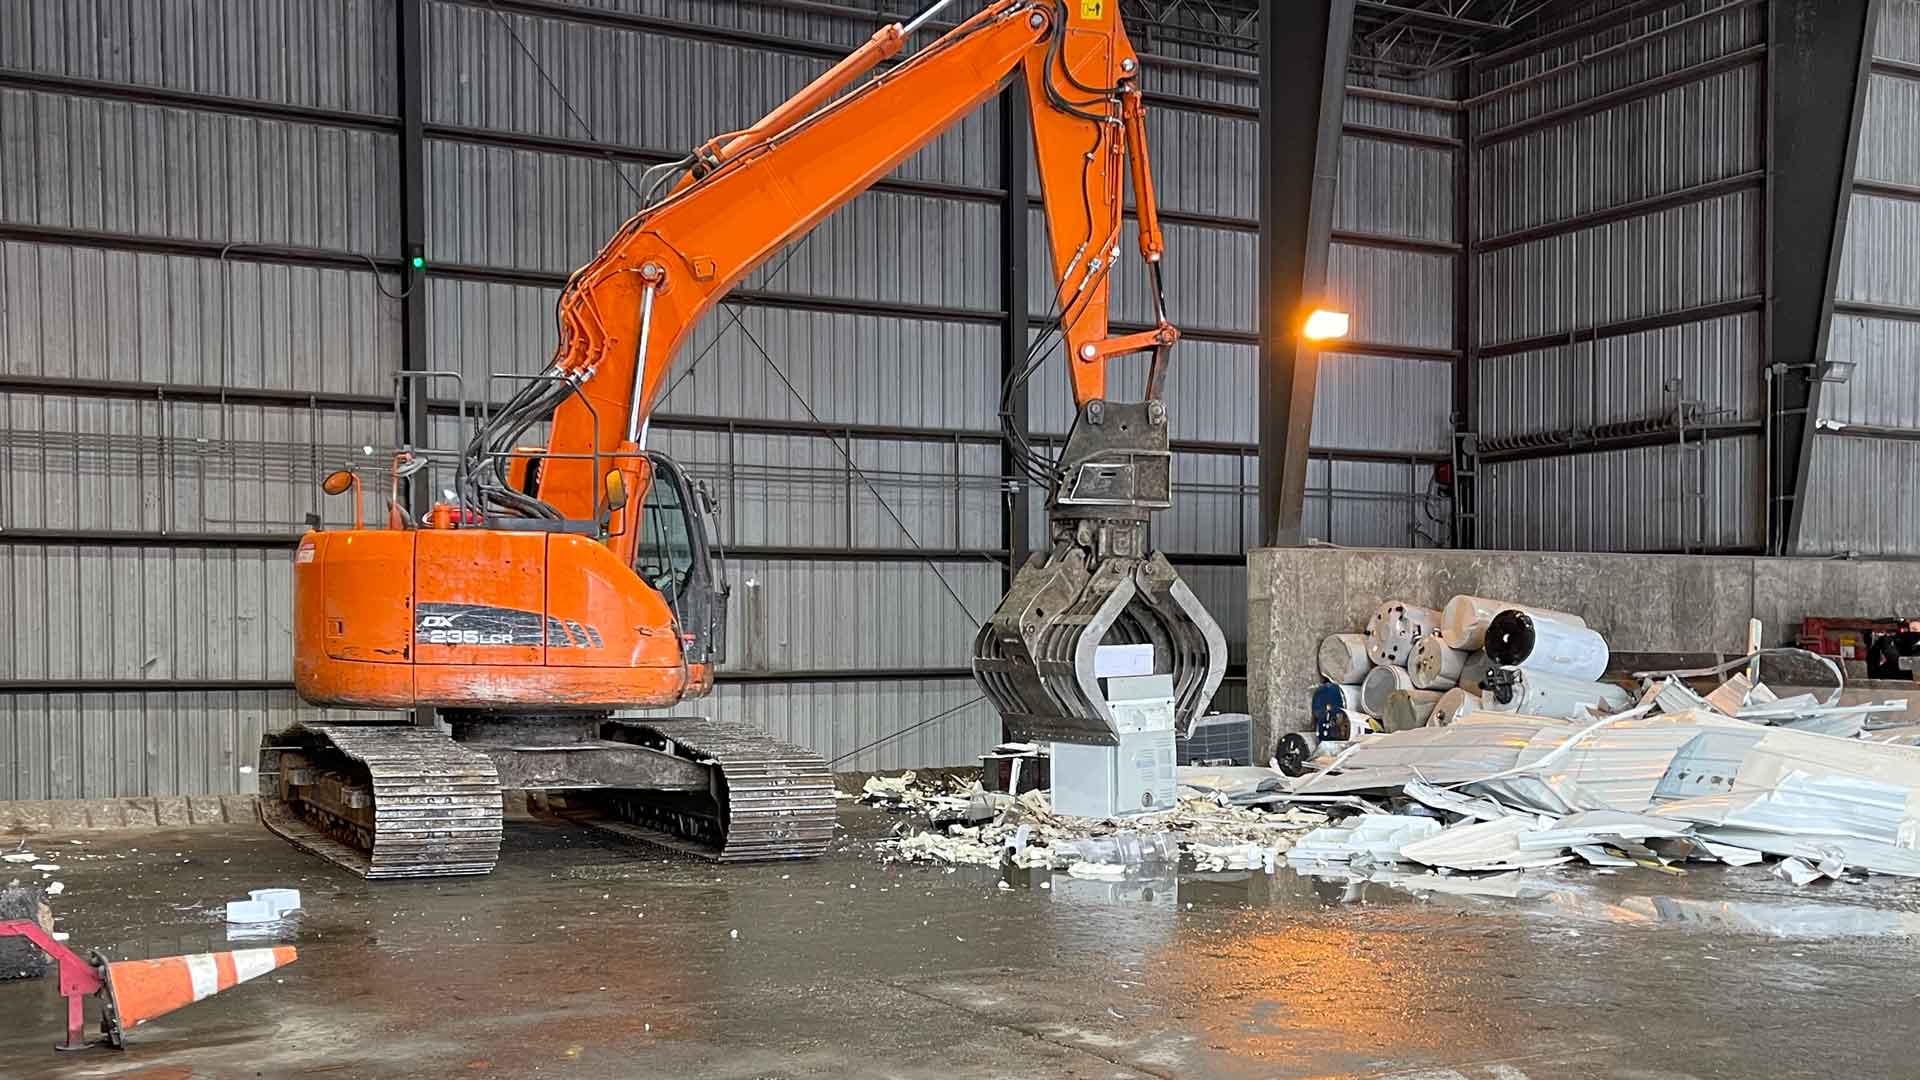 Scrap metal being crushed